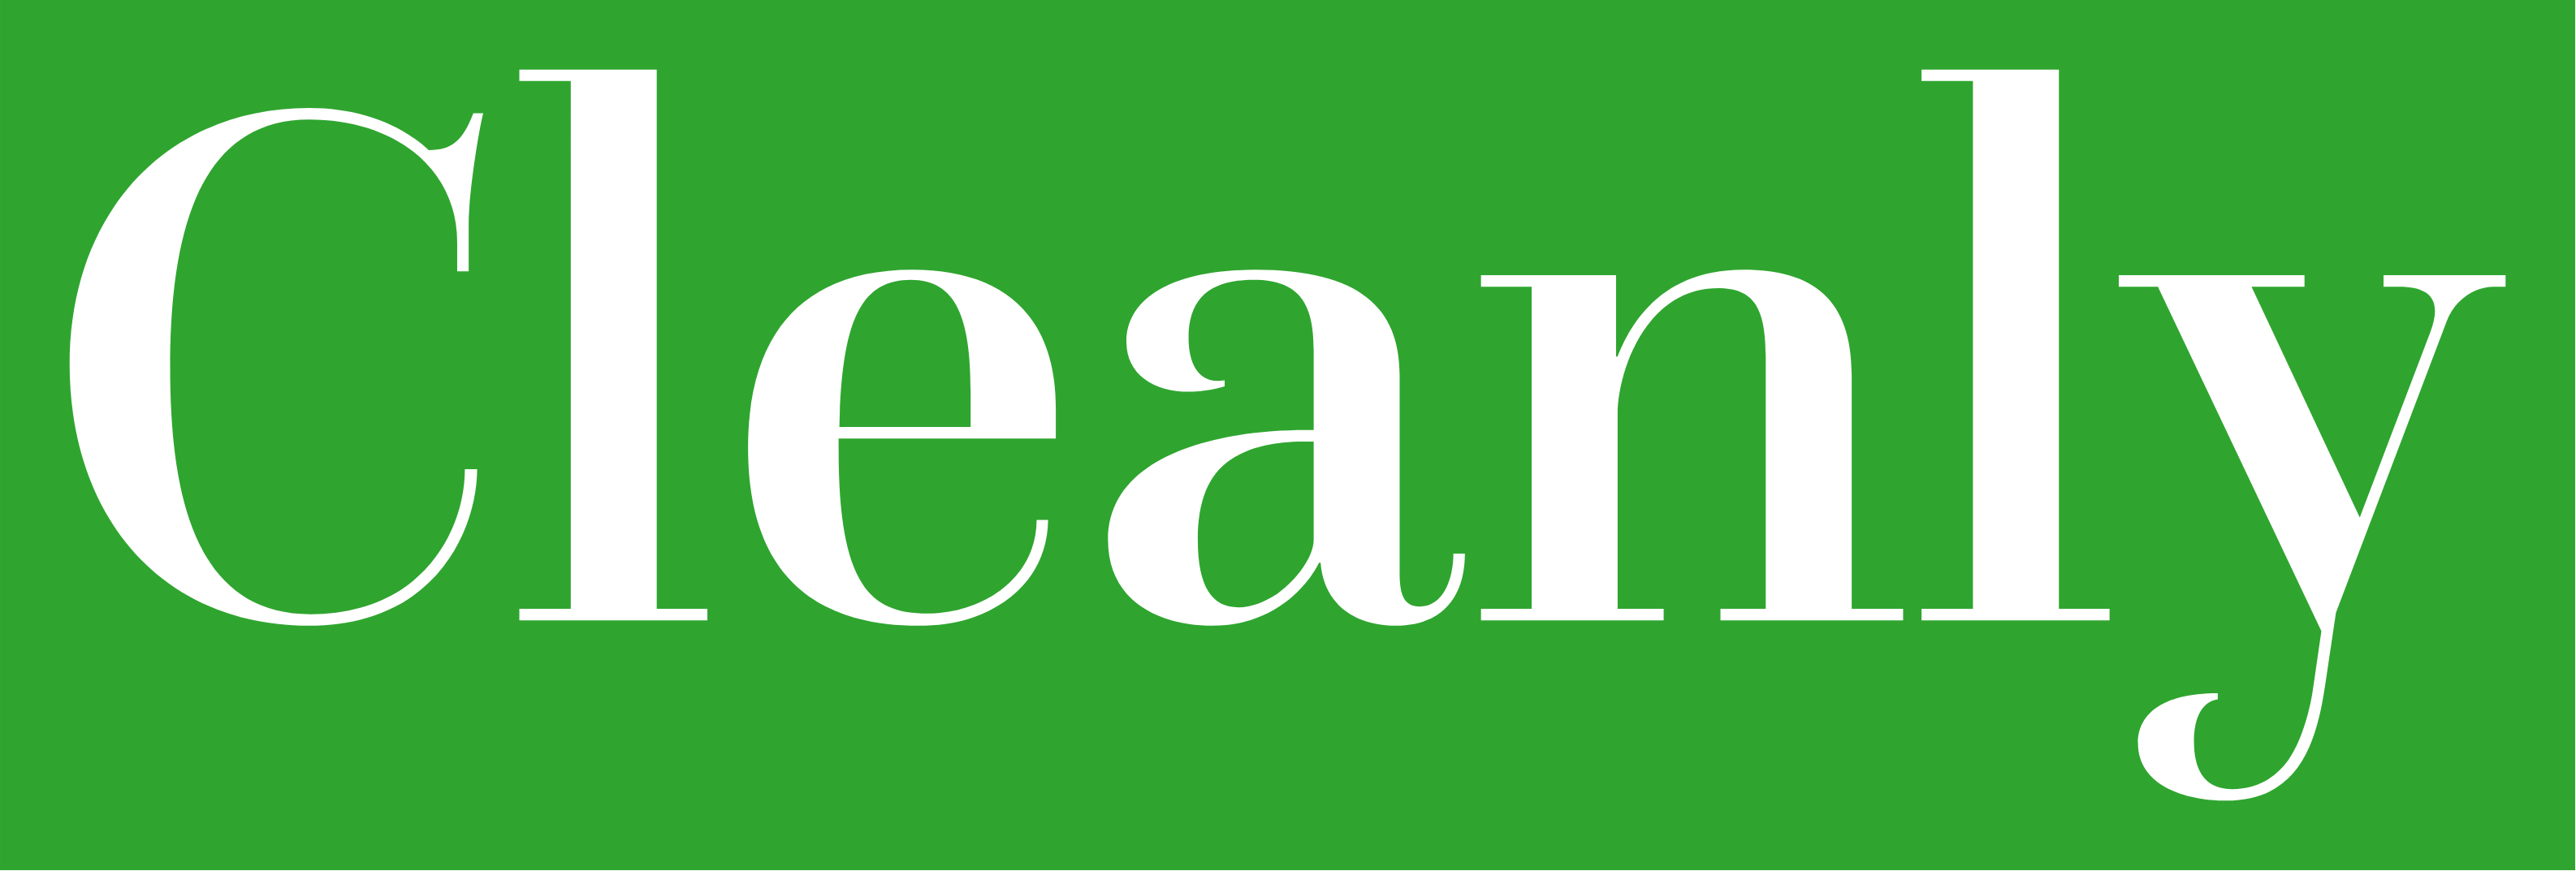 Cleanly LLC Logo